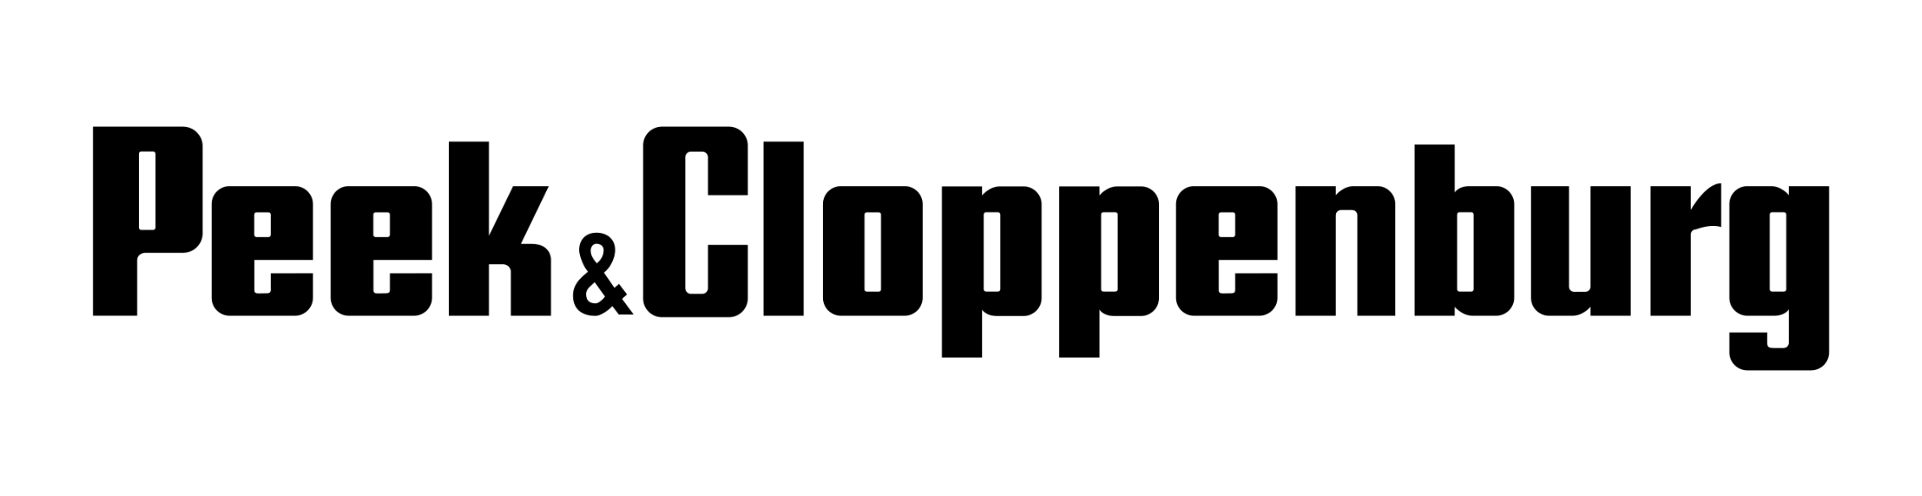 black logo peek und cloppenburg